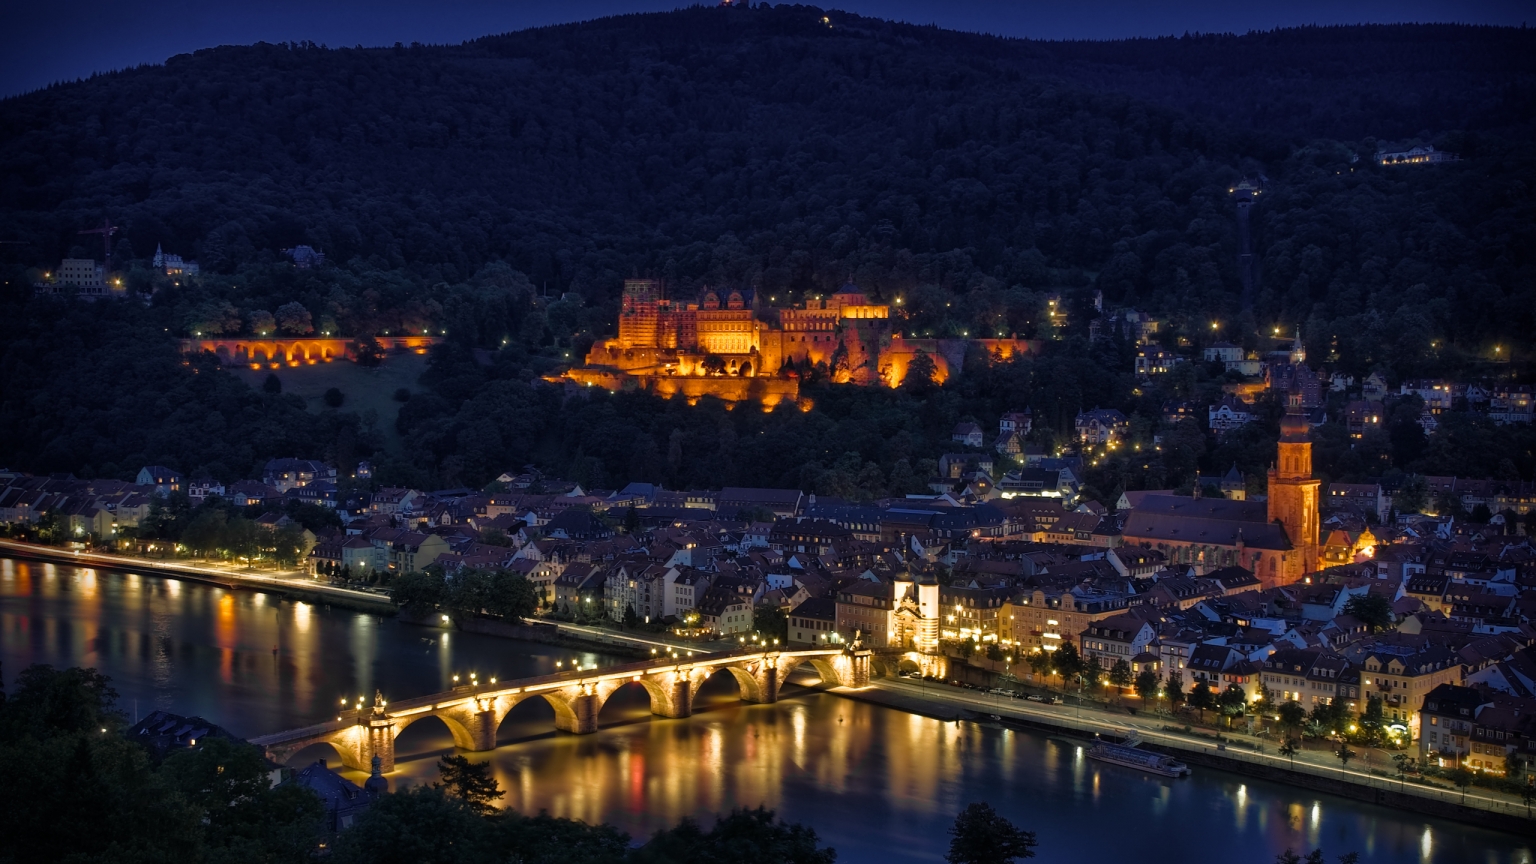 Heidelberg Night Lights for 1536 x 864 HDTV resolution